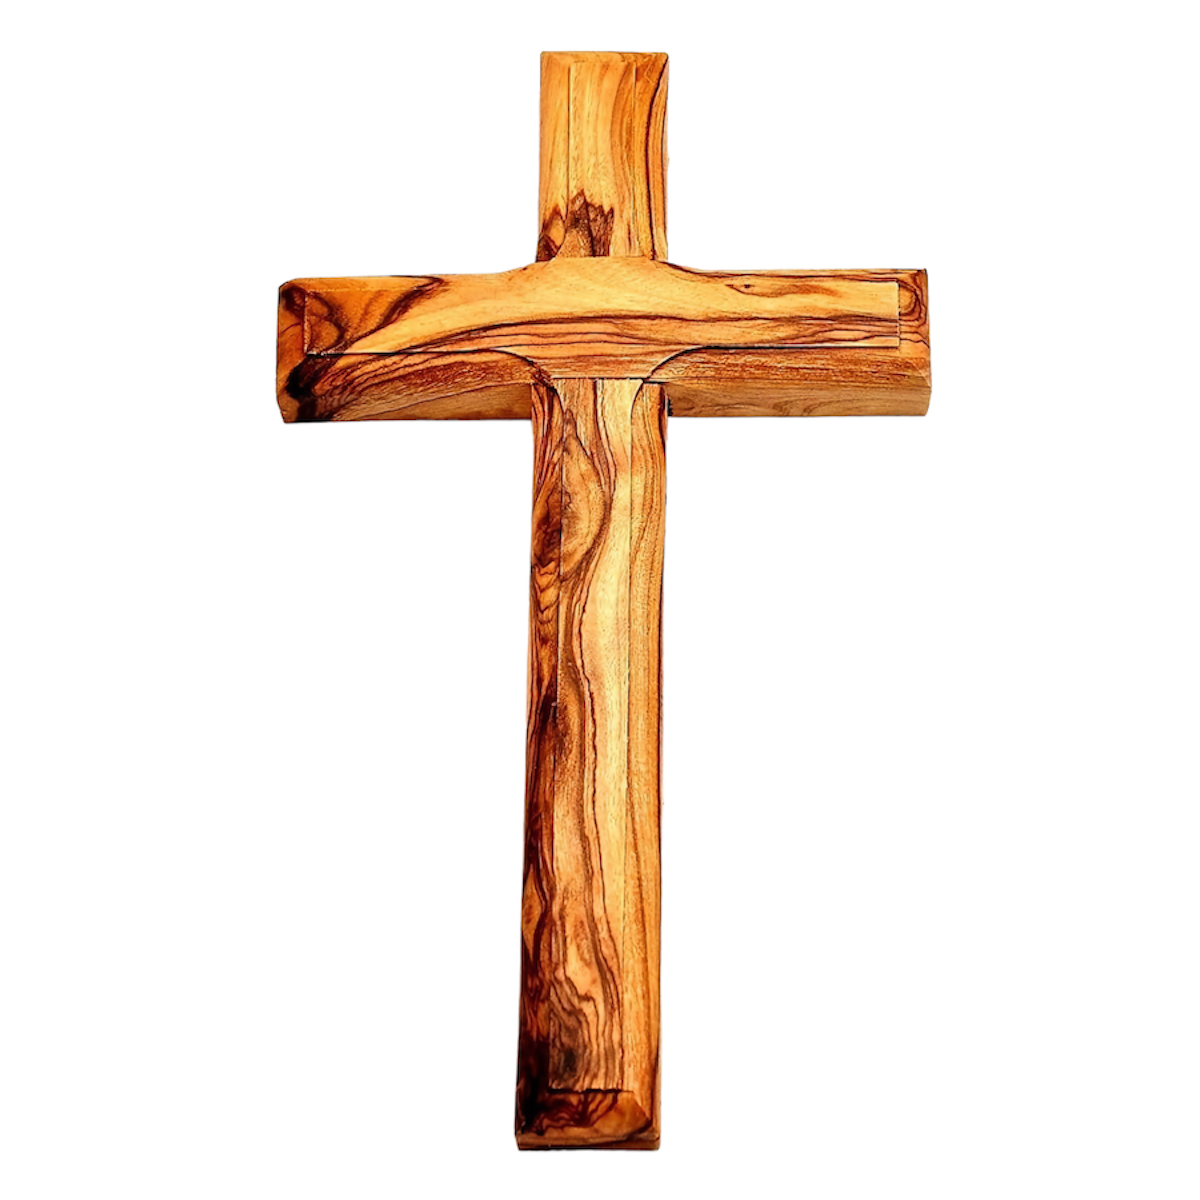 Jerusalem Olivewood Cross Made in Bethlehem 4 Sizes